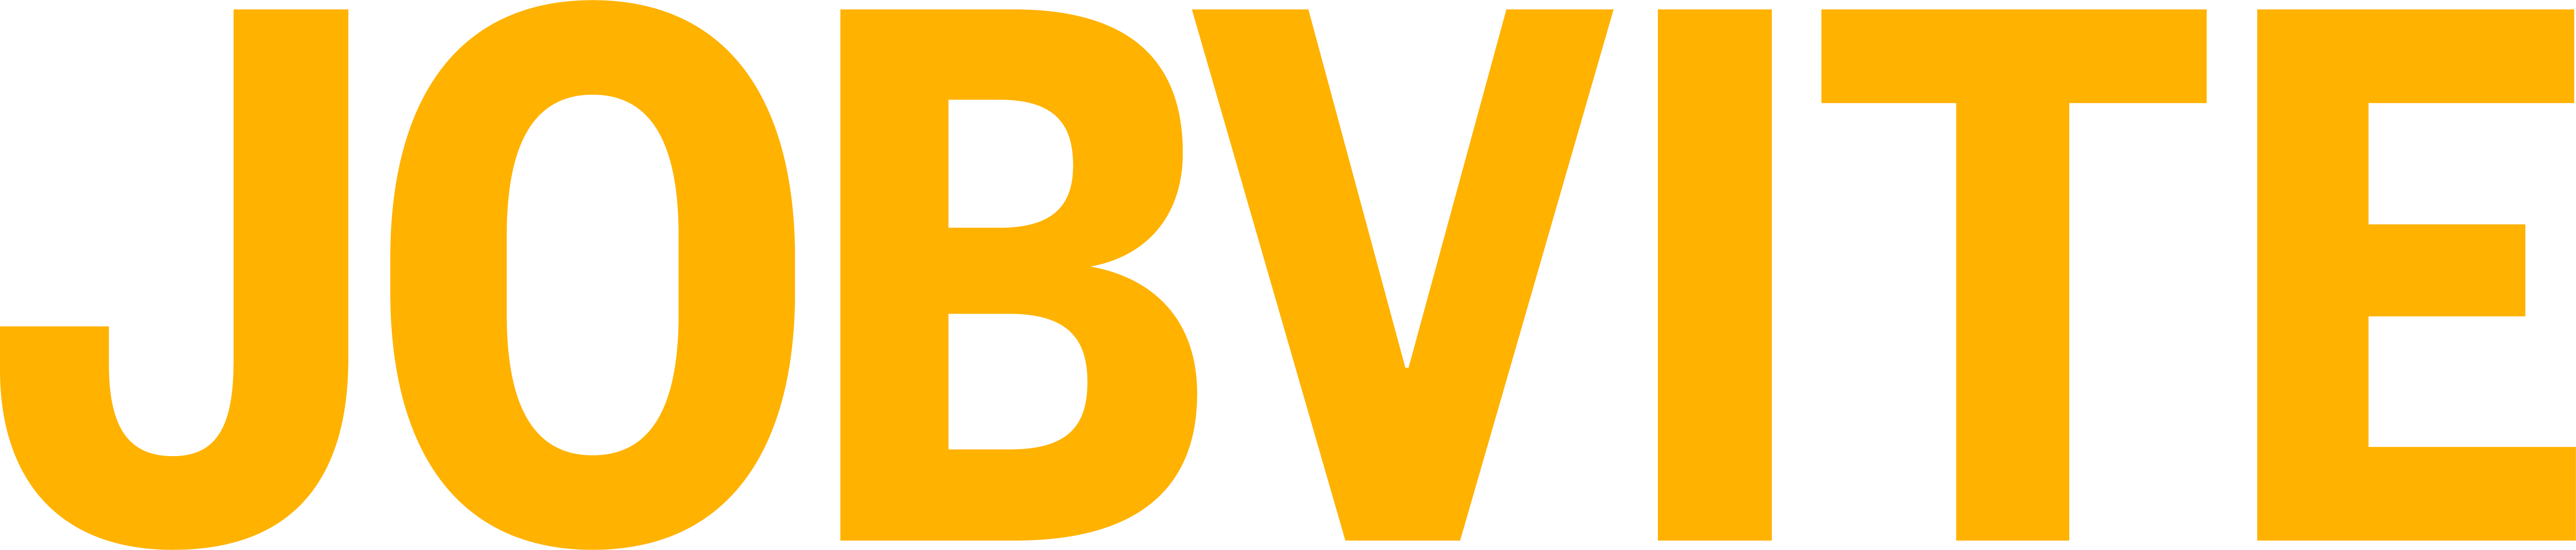 Jobvite Logo